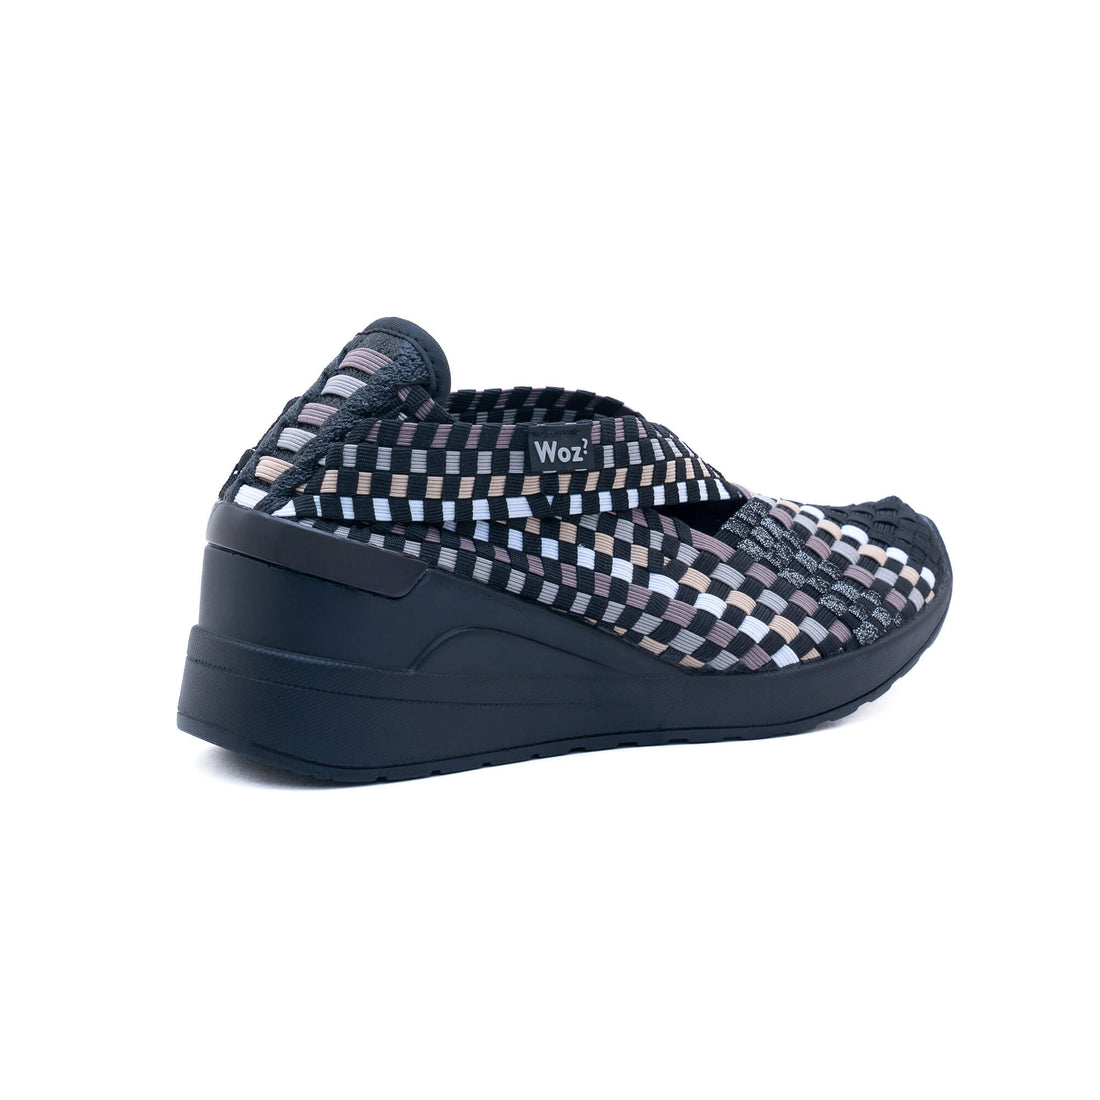 Tolone Black & Beige Sneakers